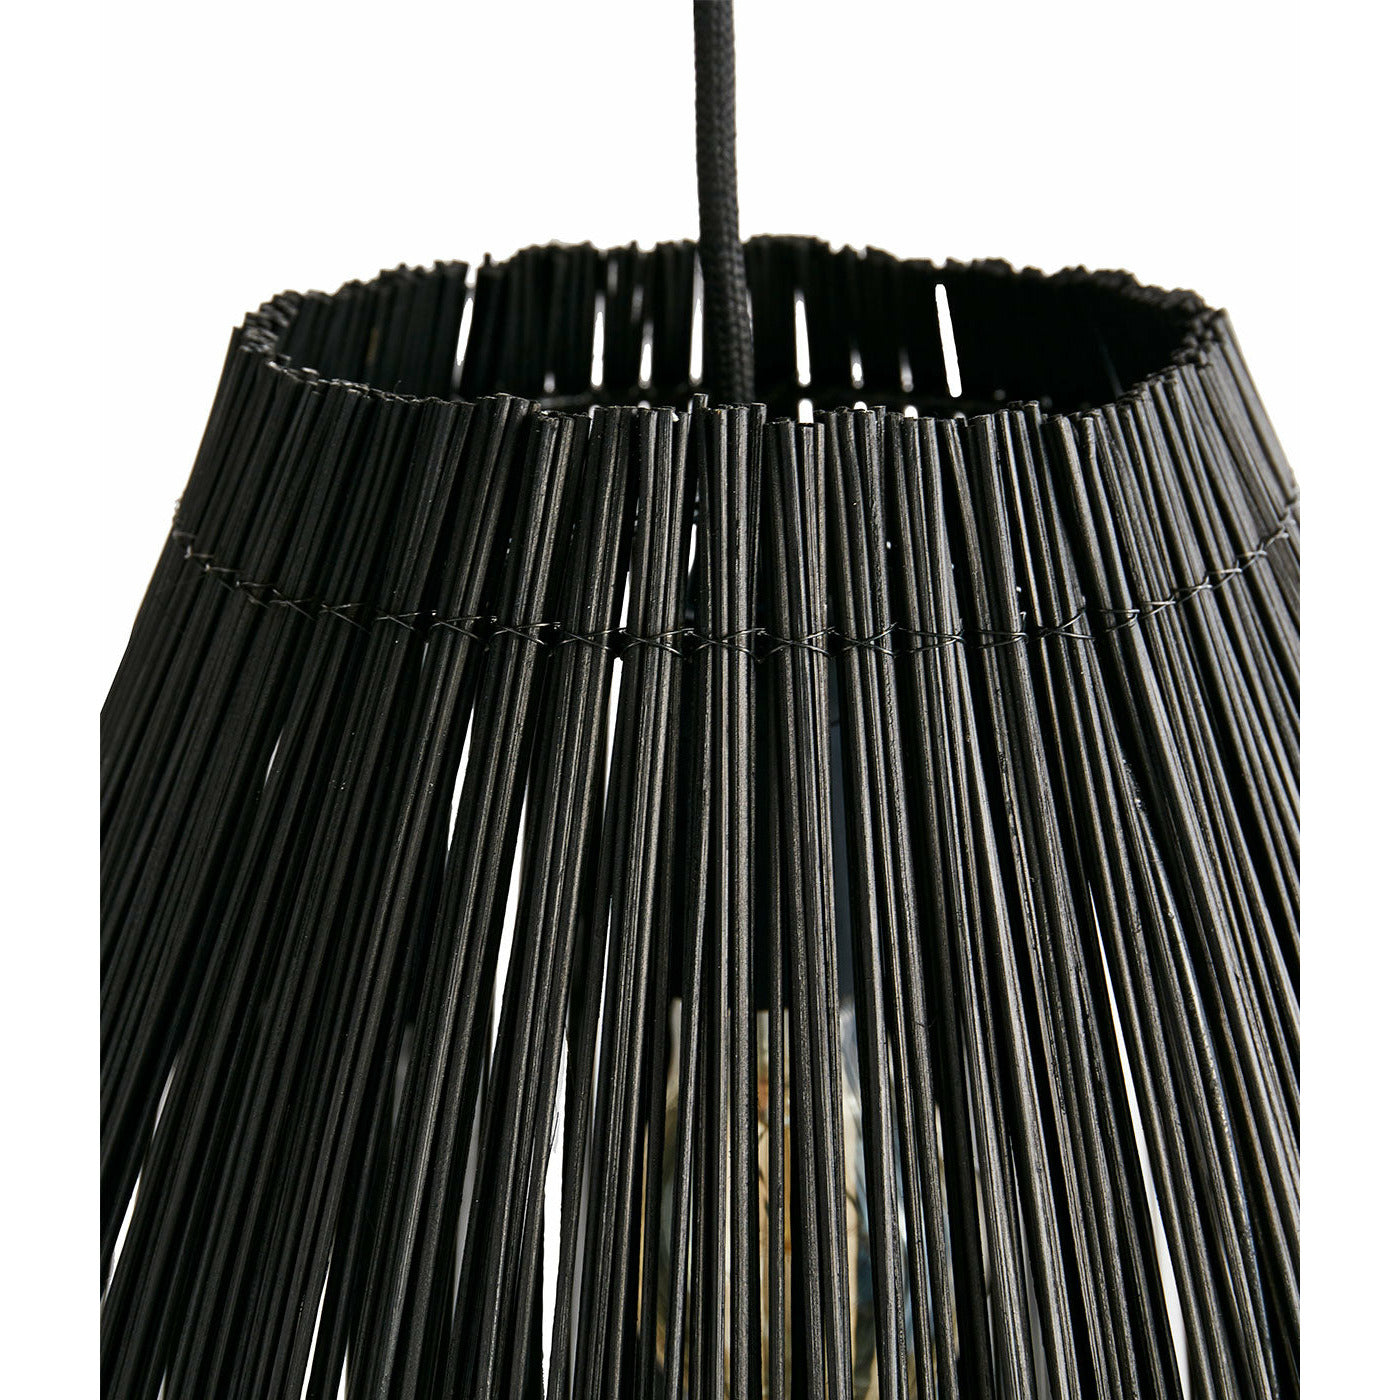 Muubs Lampe Fishtrap S - Sort - Bambus/metal - H: 29,5 Ø: 23 cm - DesignGaragen.dk.